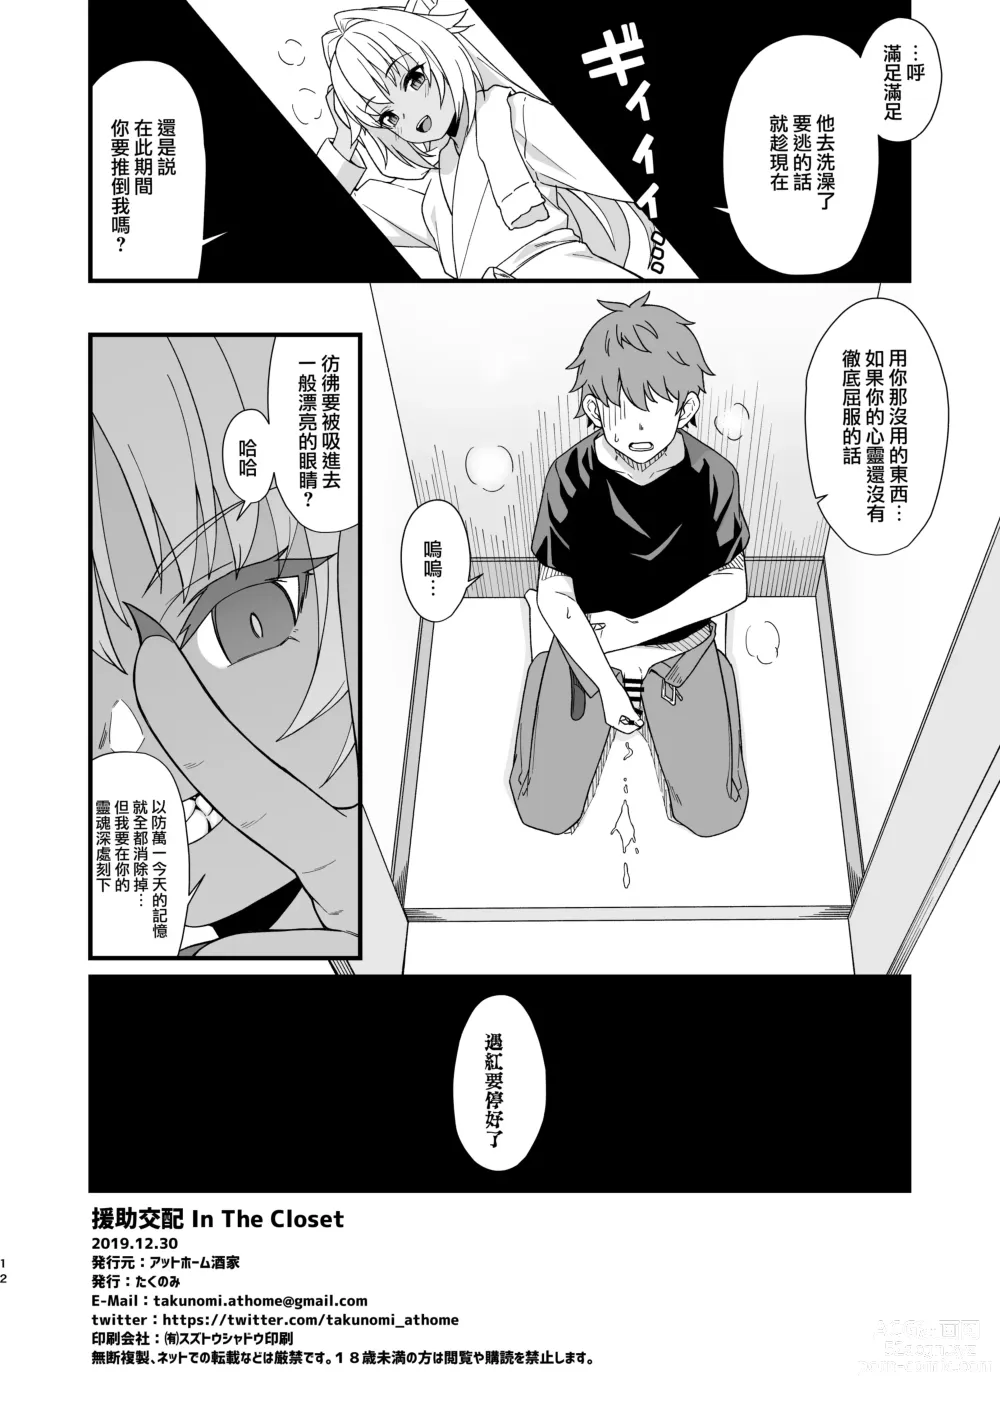 Page 13 of doujinshi Enjo Kouhai In The Closet